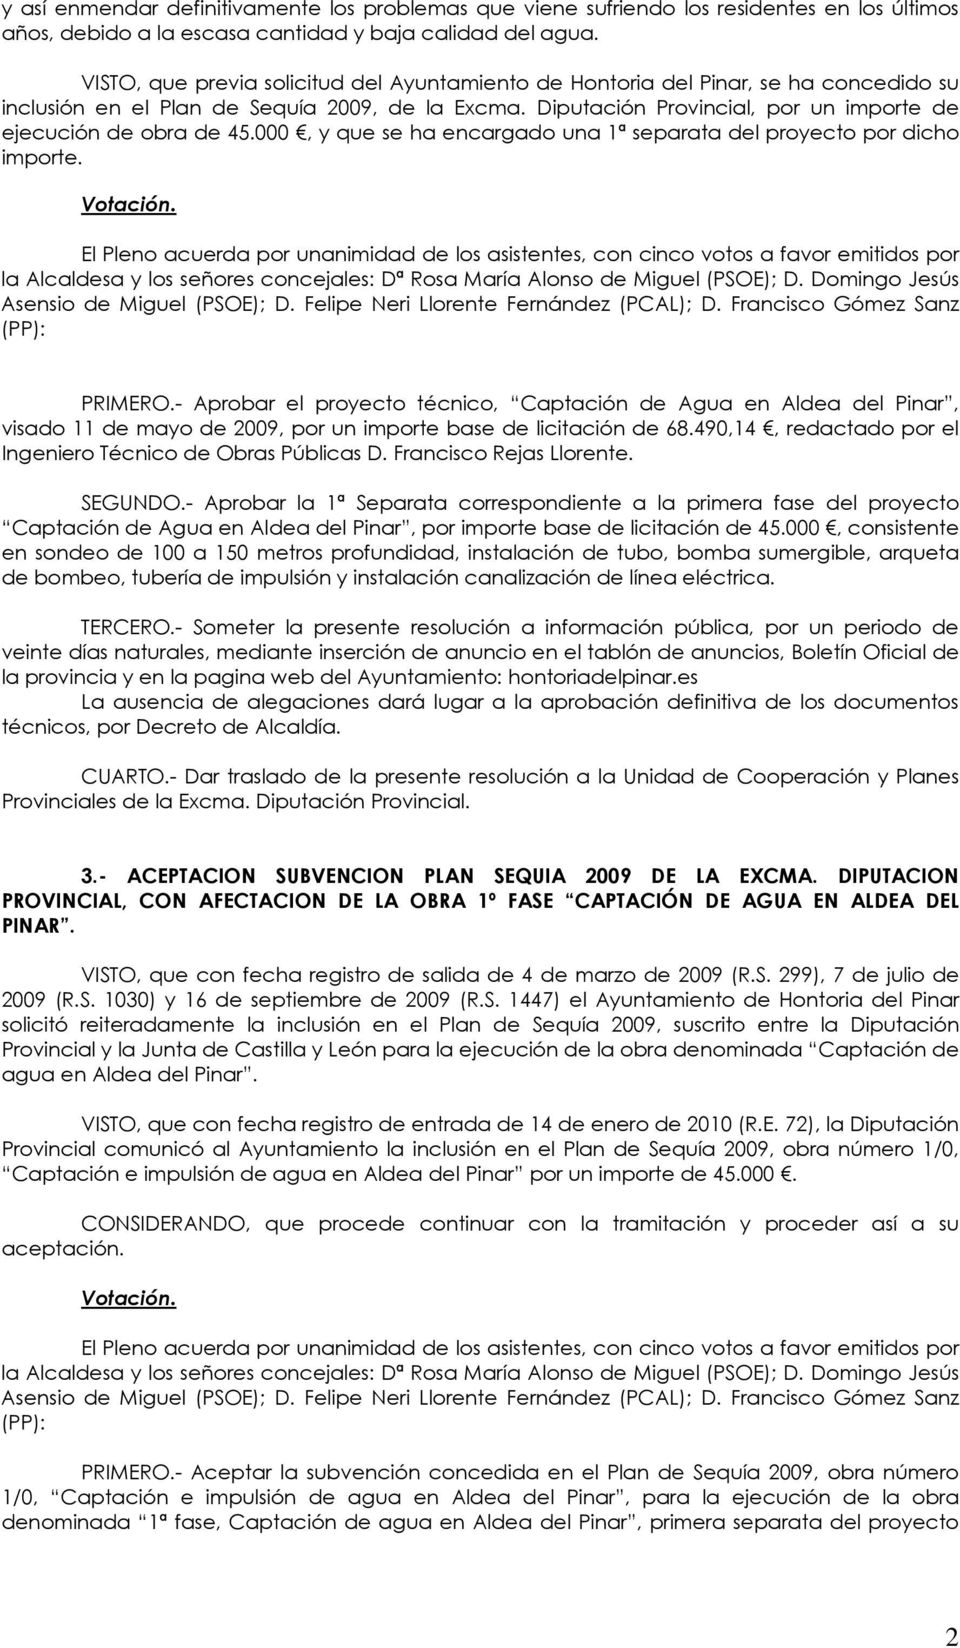 Diputación Provincial, por un importe de ejecución de obra de 45.000, y que se ha encargado una 1ª separata del proyecto por dicho importe. (PP): PRIMERO.